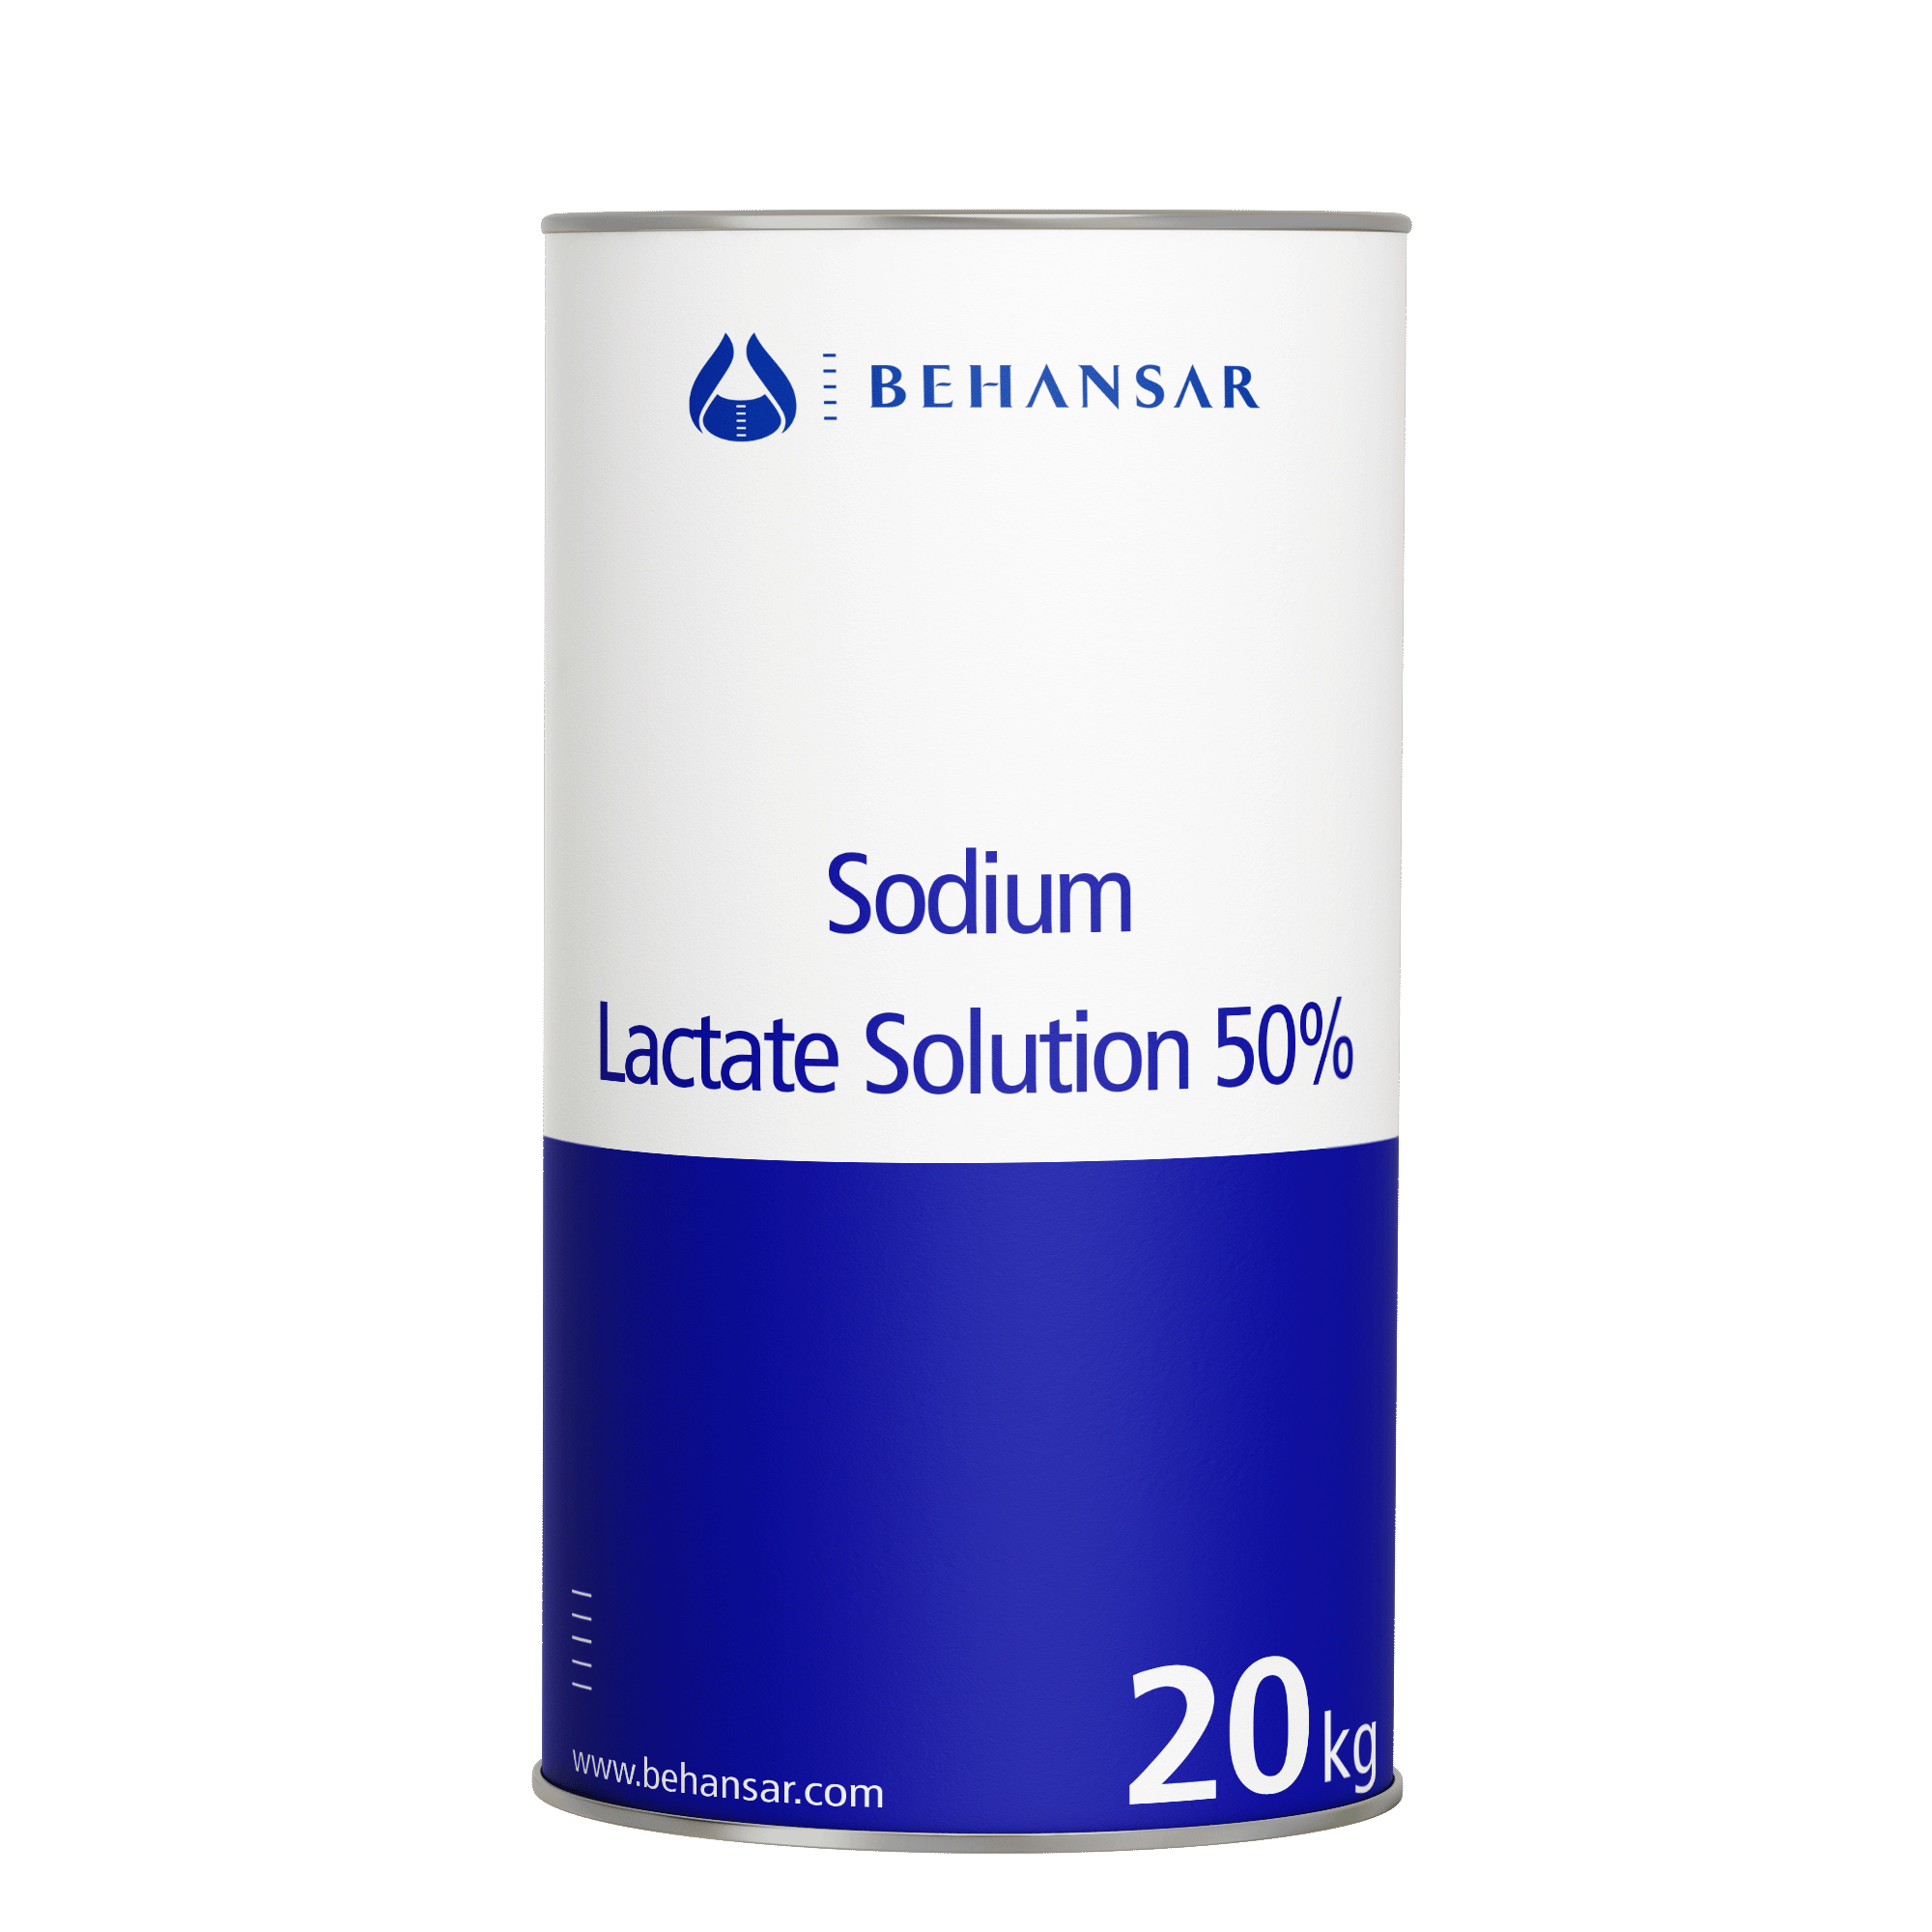 سدیم لاکتات سولوشن (50%) یکی از تولیدات شرکت بهانسار است